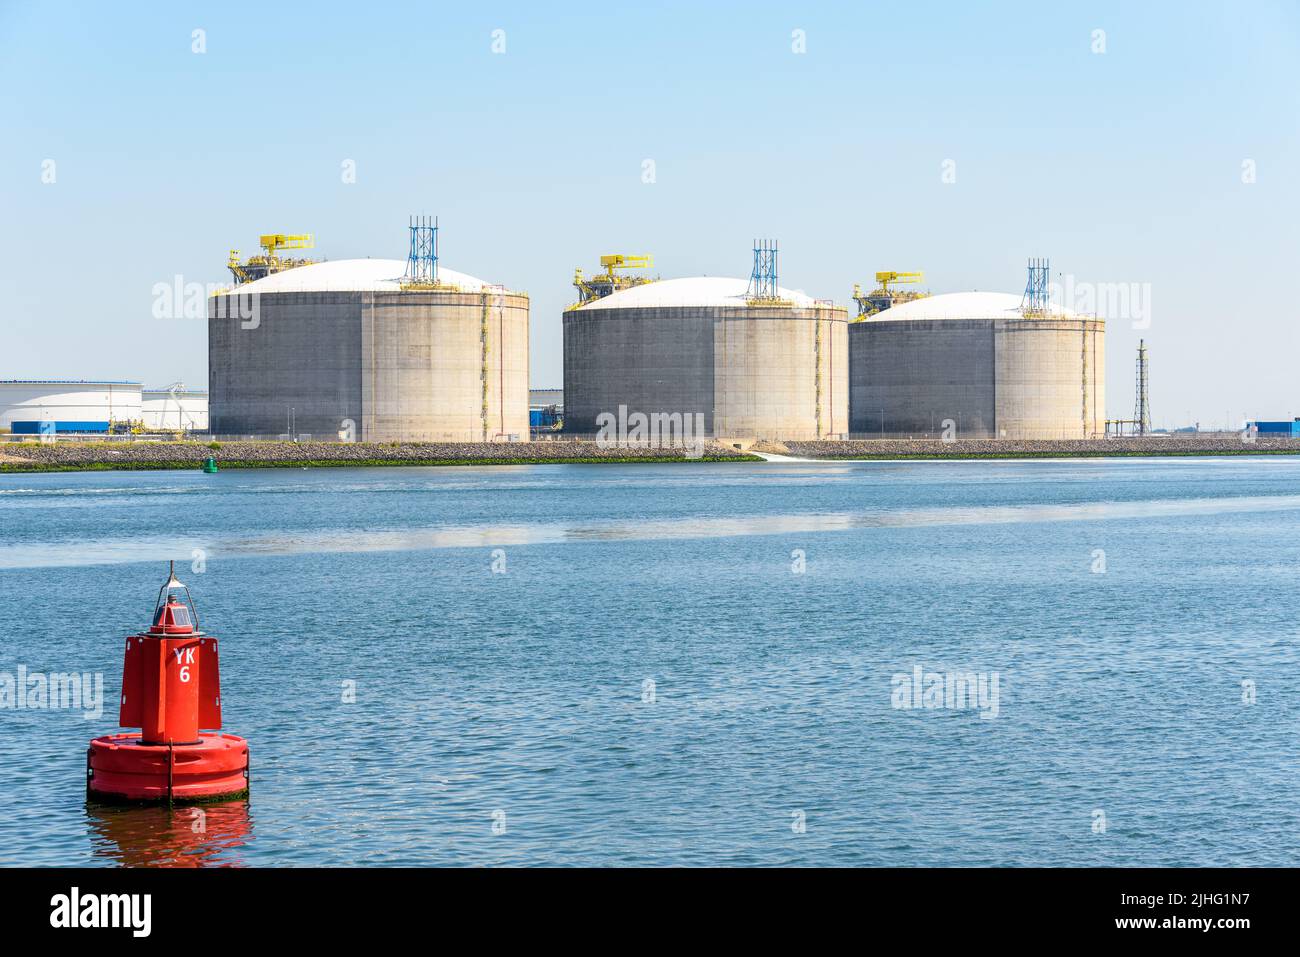 Terminale di gas naturale liquefatto con grandi vasche di cemento lungo un porto in una giornata di sole Foto Stock